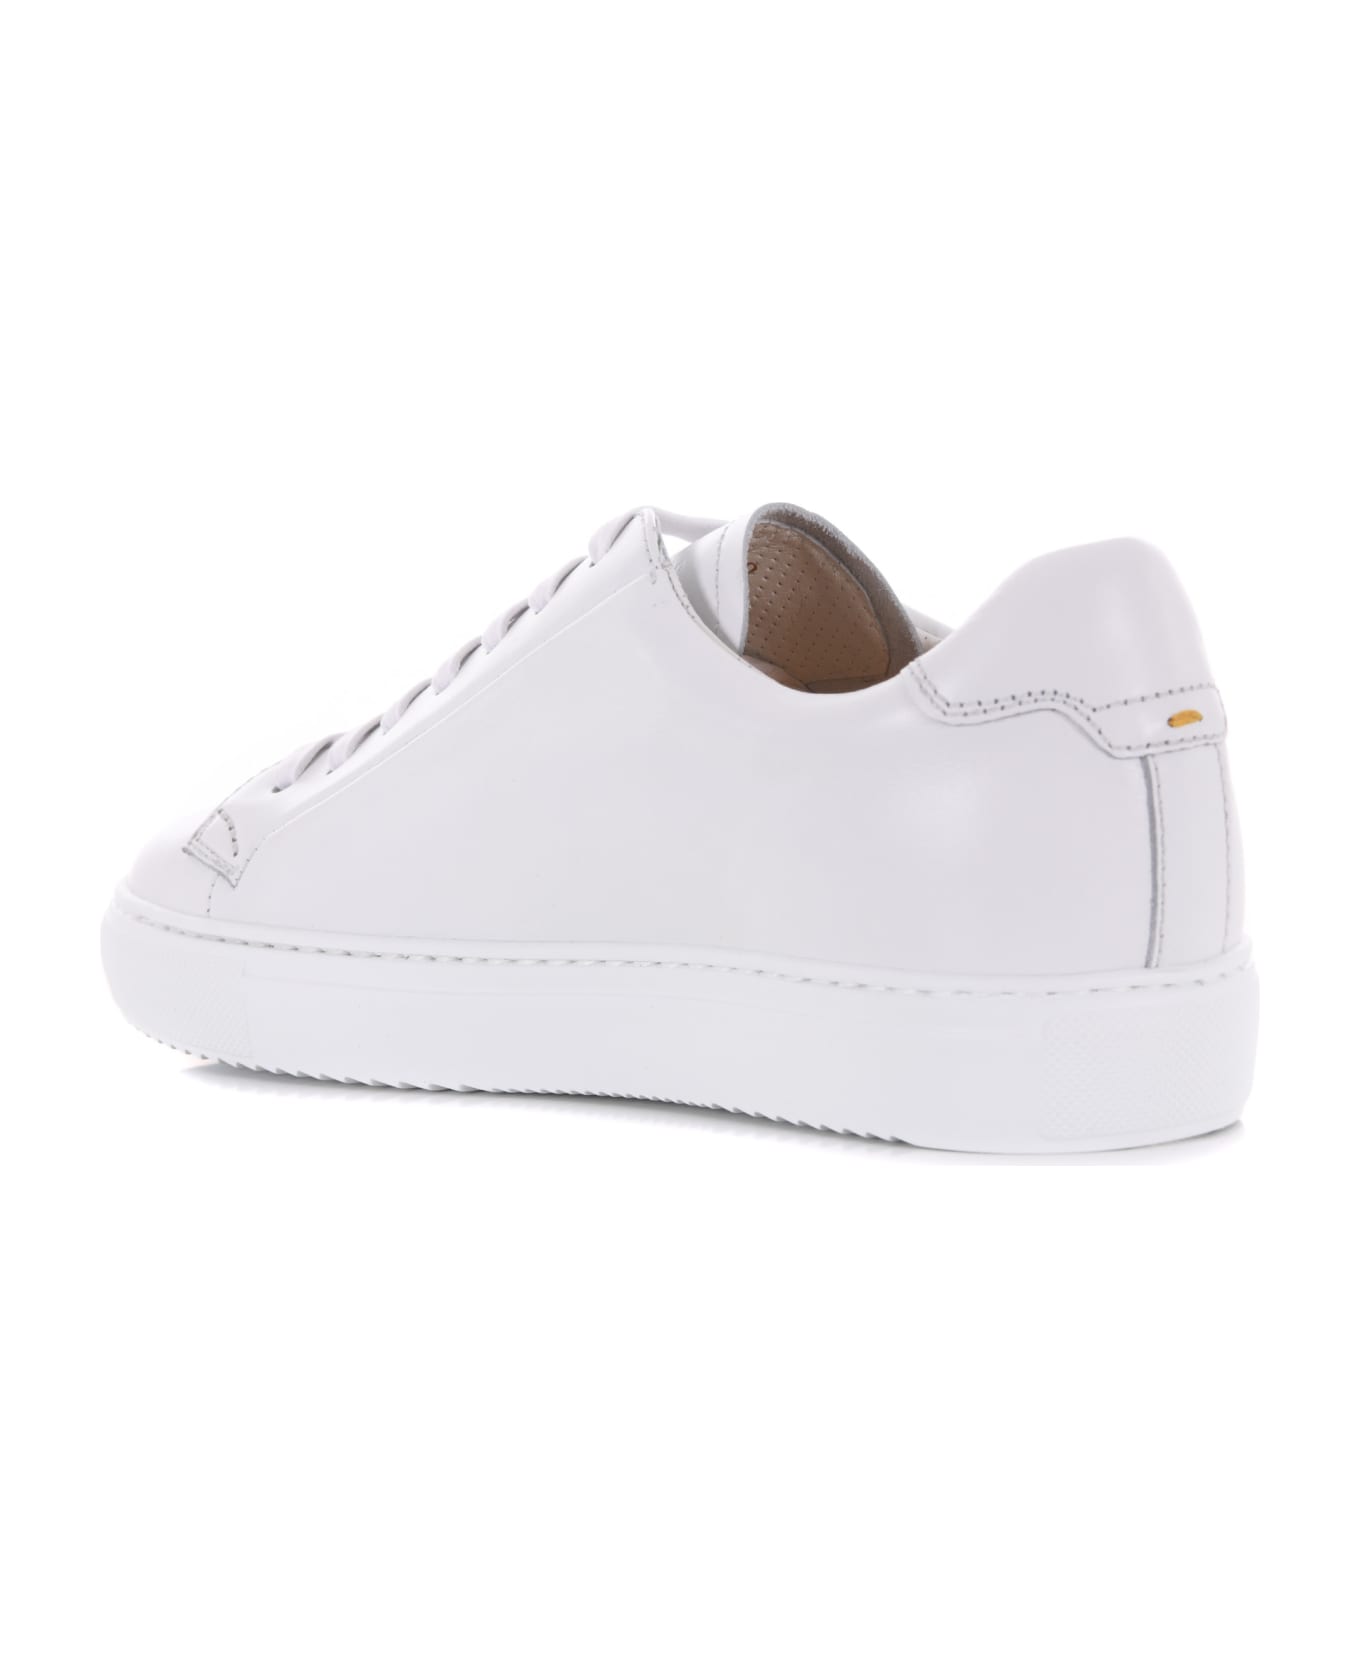 Doucal's Men's Sneakers - Bianco スニーカー